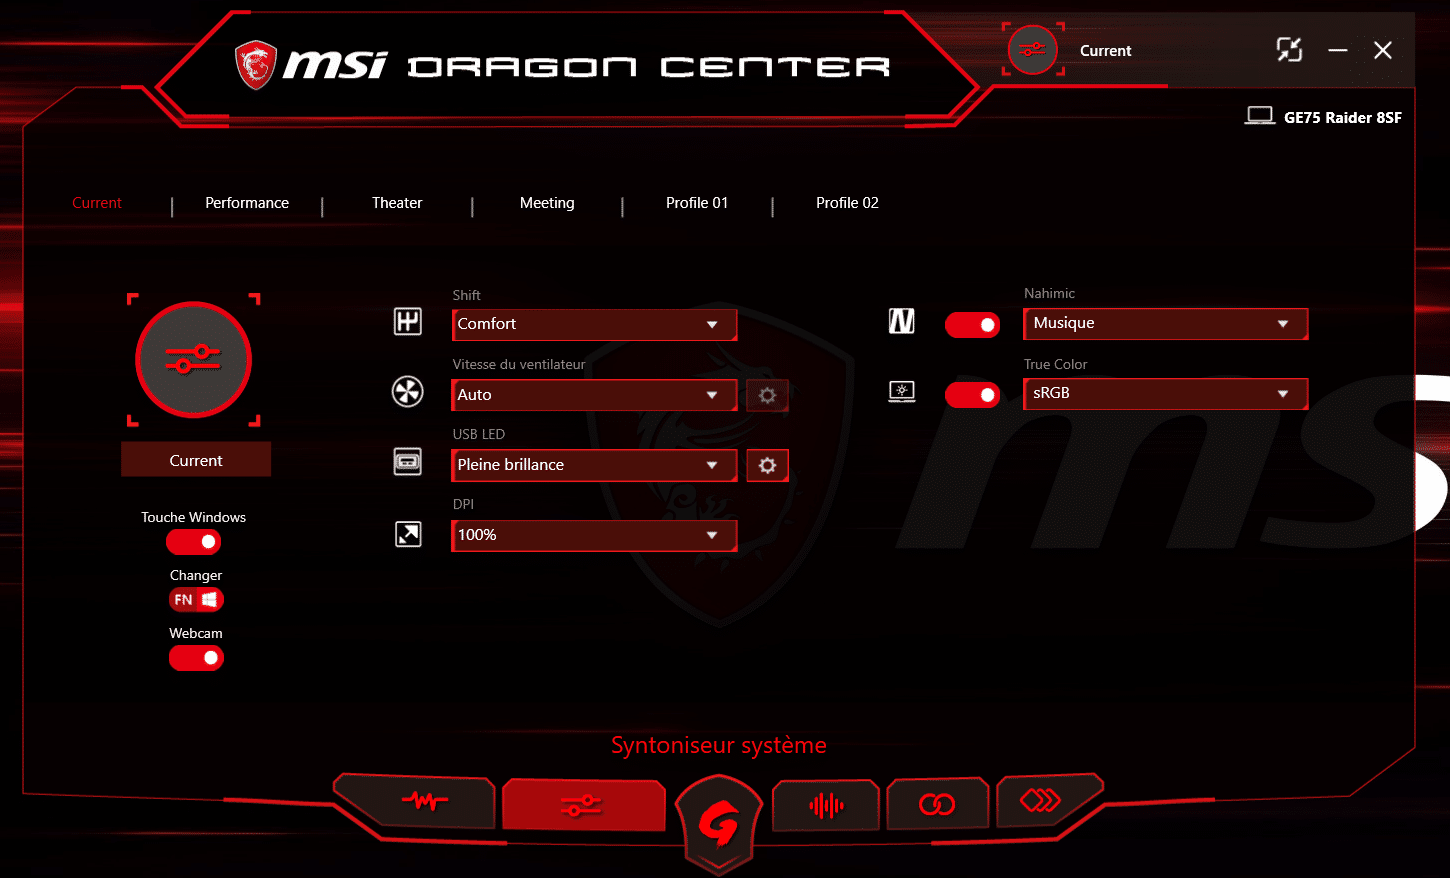 msi dragon center gaming mode